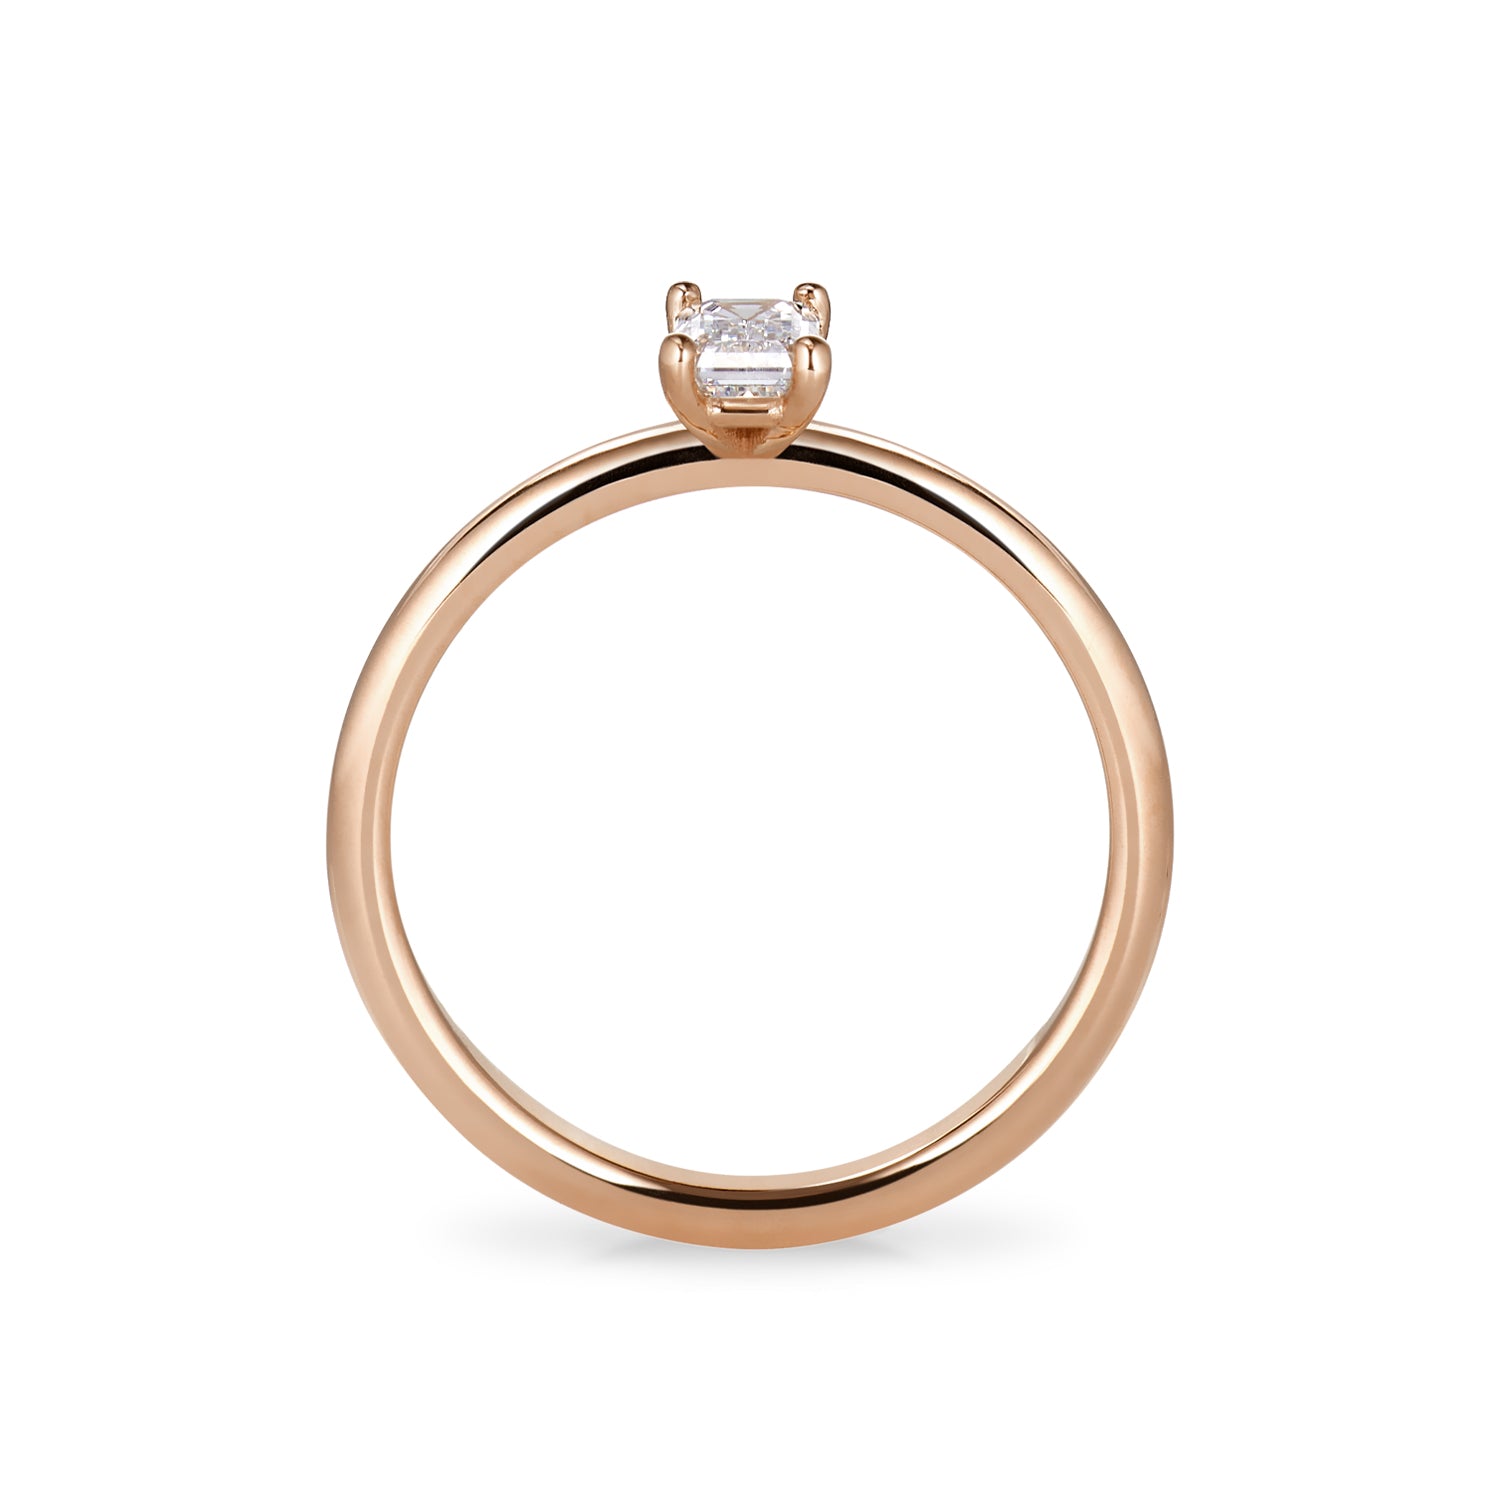 Der Ring Khloé besticht durch seine besondere Form und dem wunderschönen Schliff des Labor Diamanten von Zola Berlin.